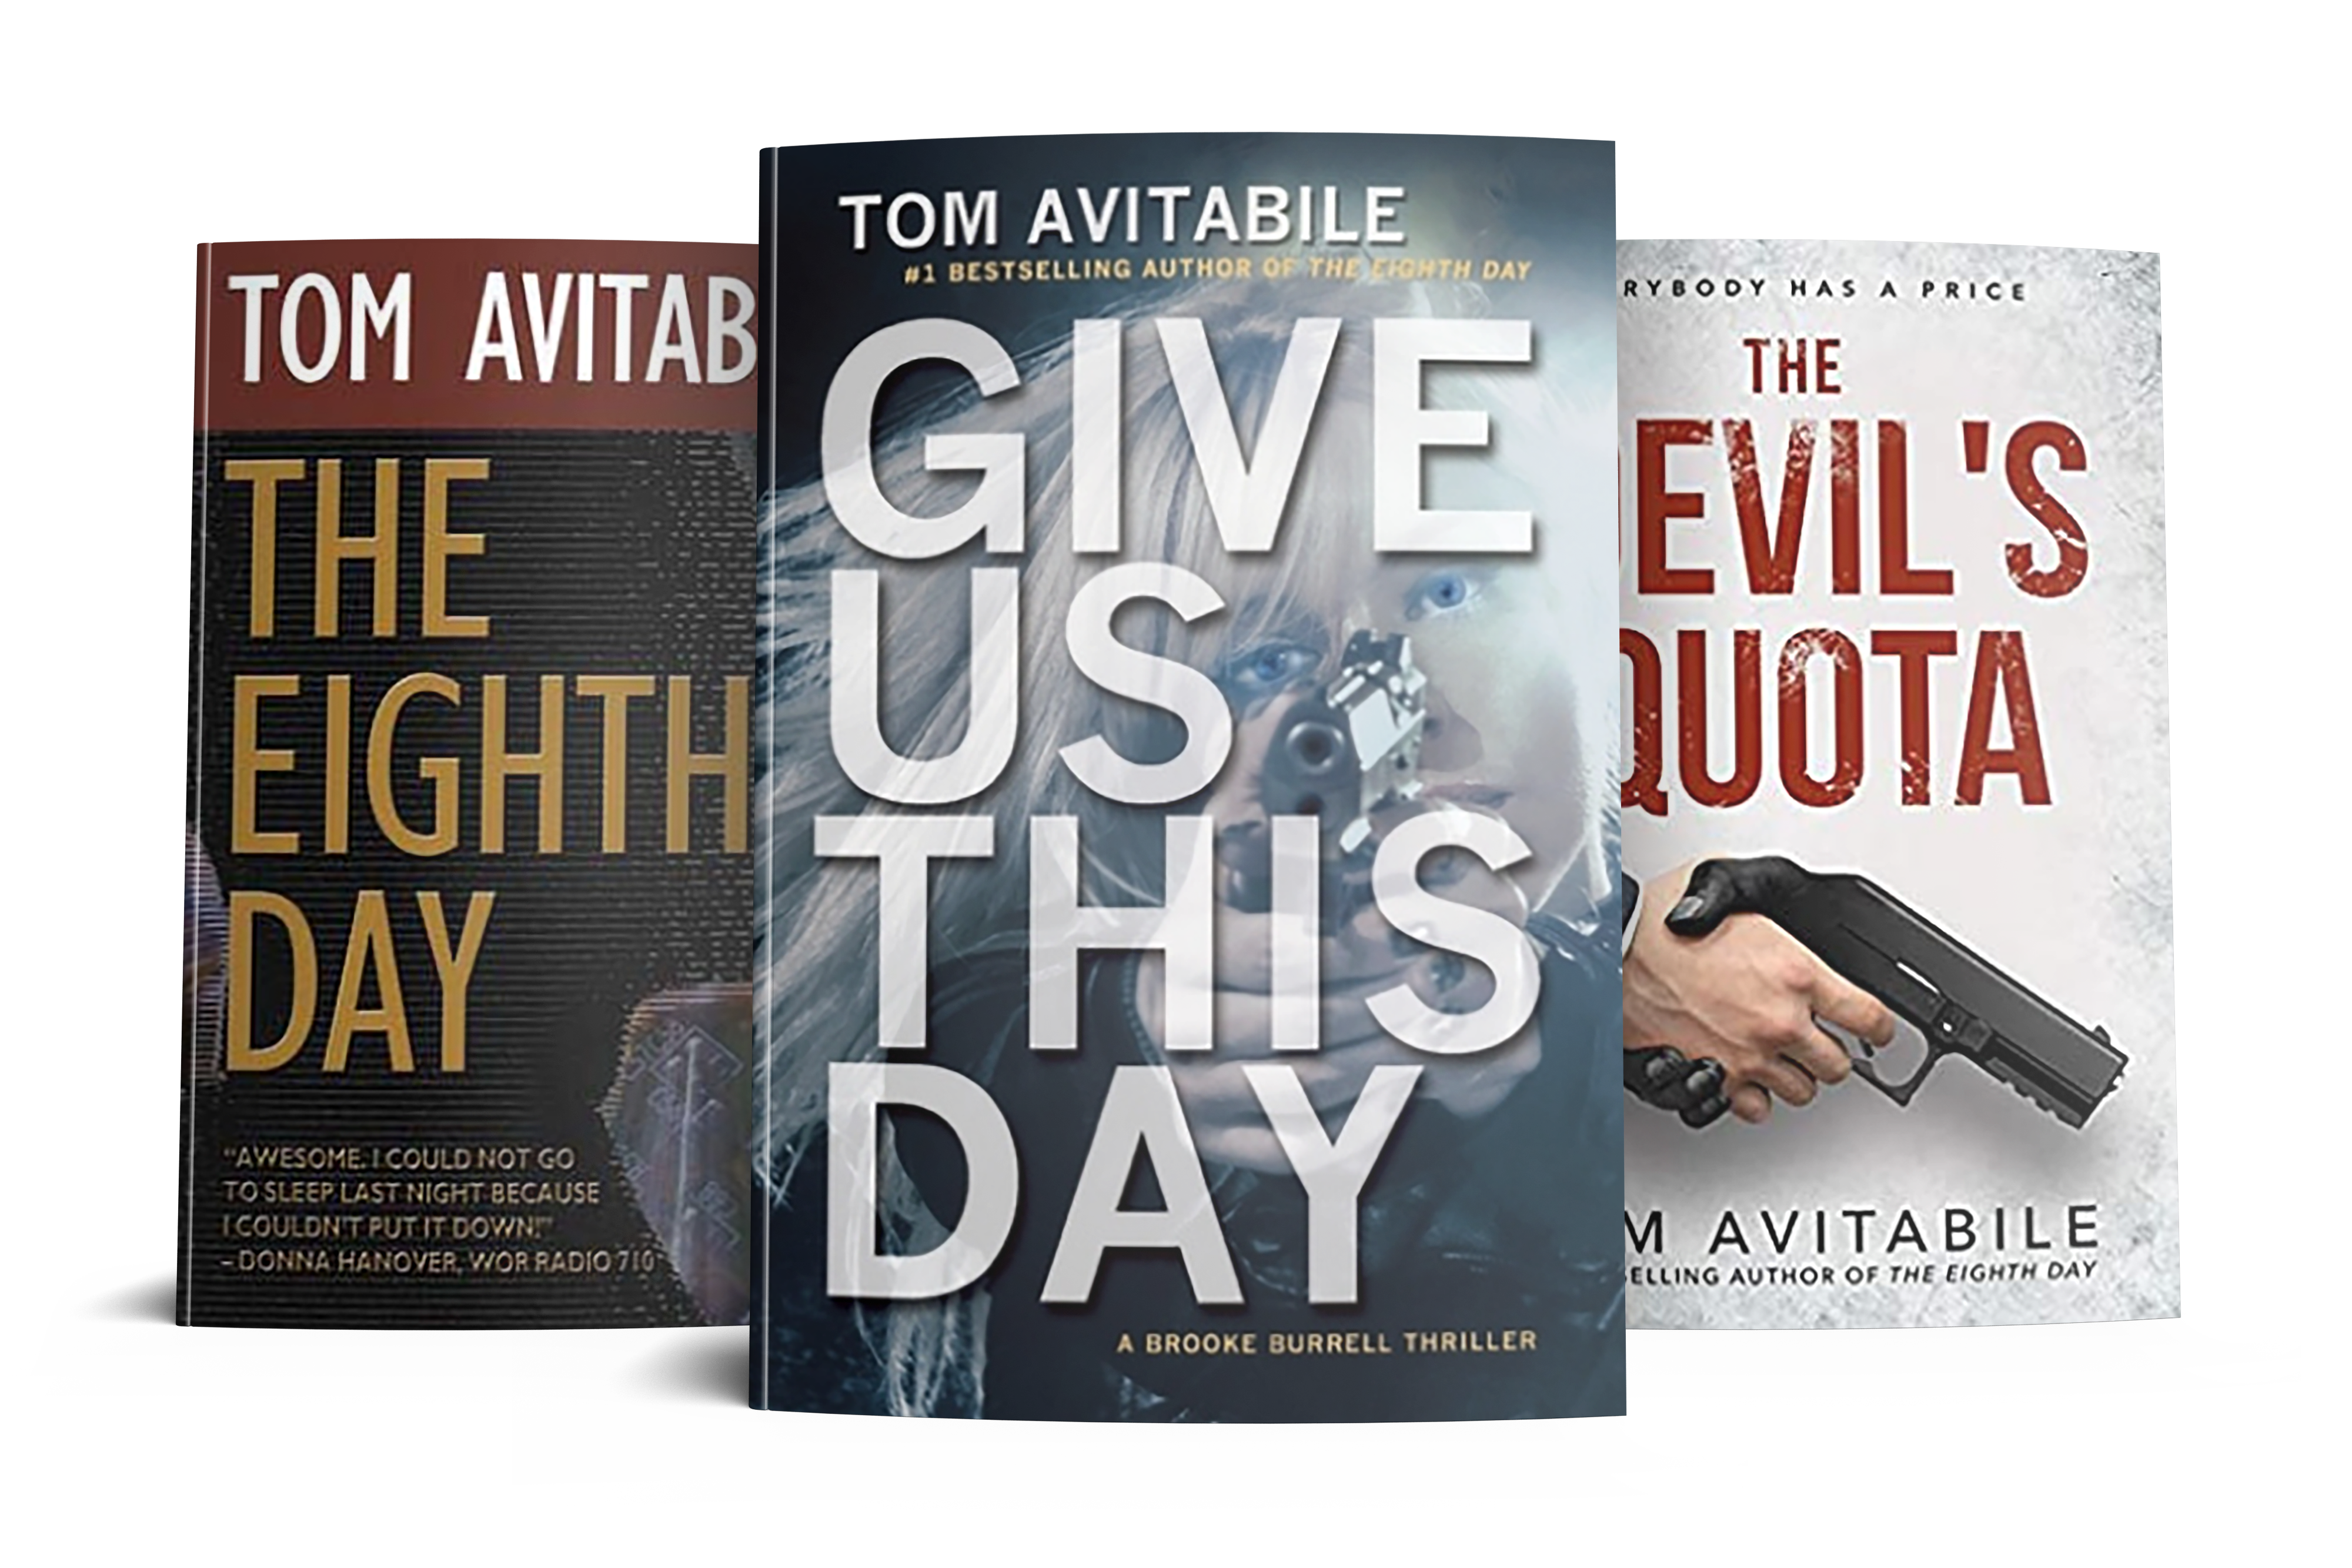 Bestselling Novels by Tom Avitabile